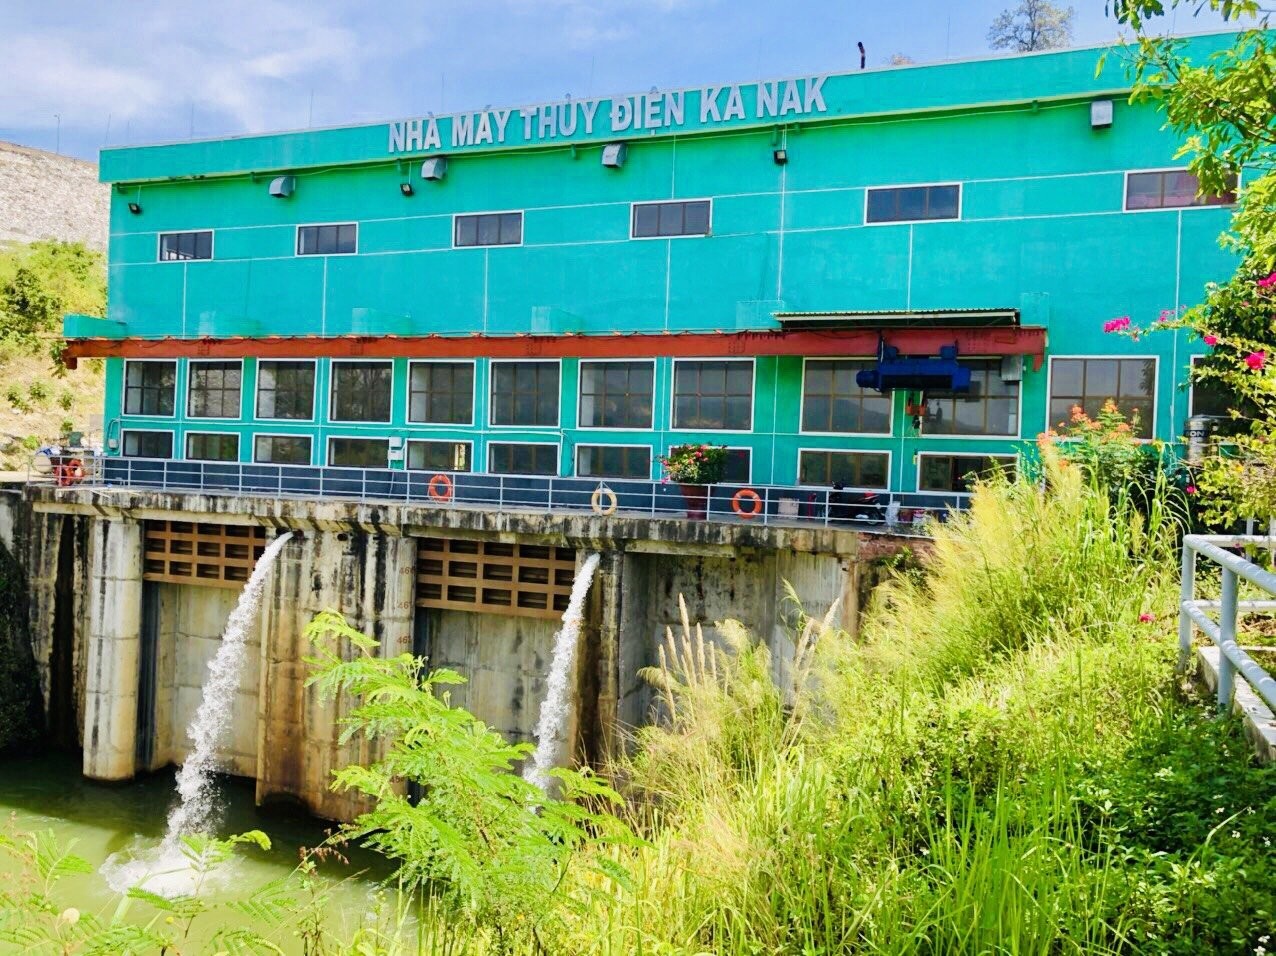 Môi trường ‘Sáng - Xanh - Sạch - Đẹp’: Nét đẹp văn hóa tại Thủy điện An Khê - Ka Nak